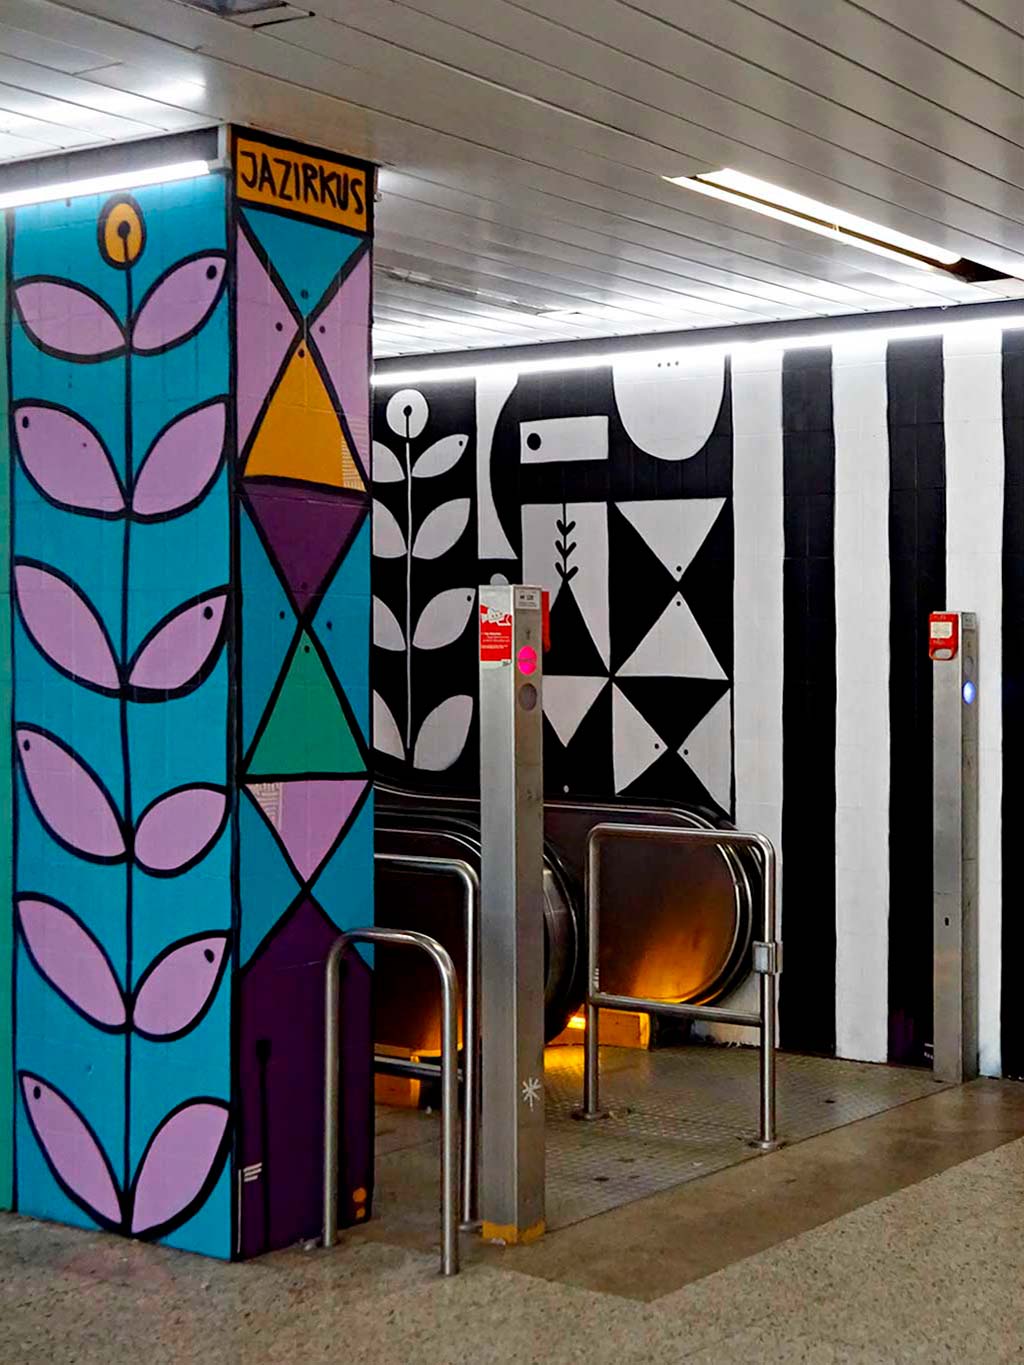 Florales Motivwelt ziert Wände der S-Bahn-Station Galluswarte